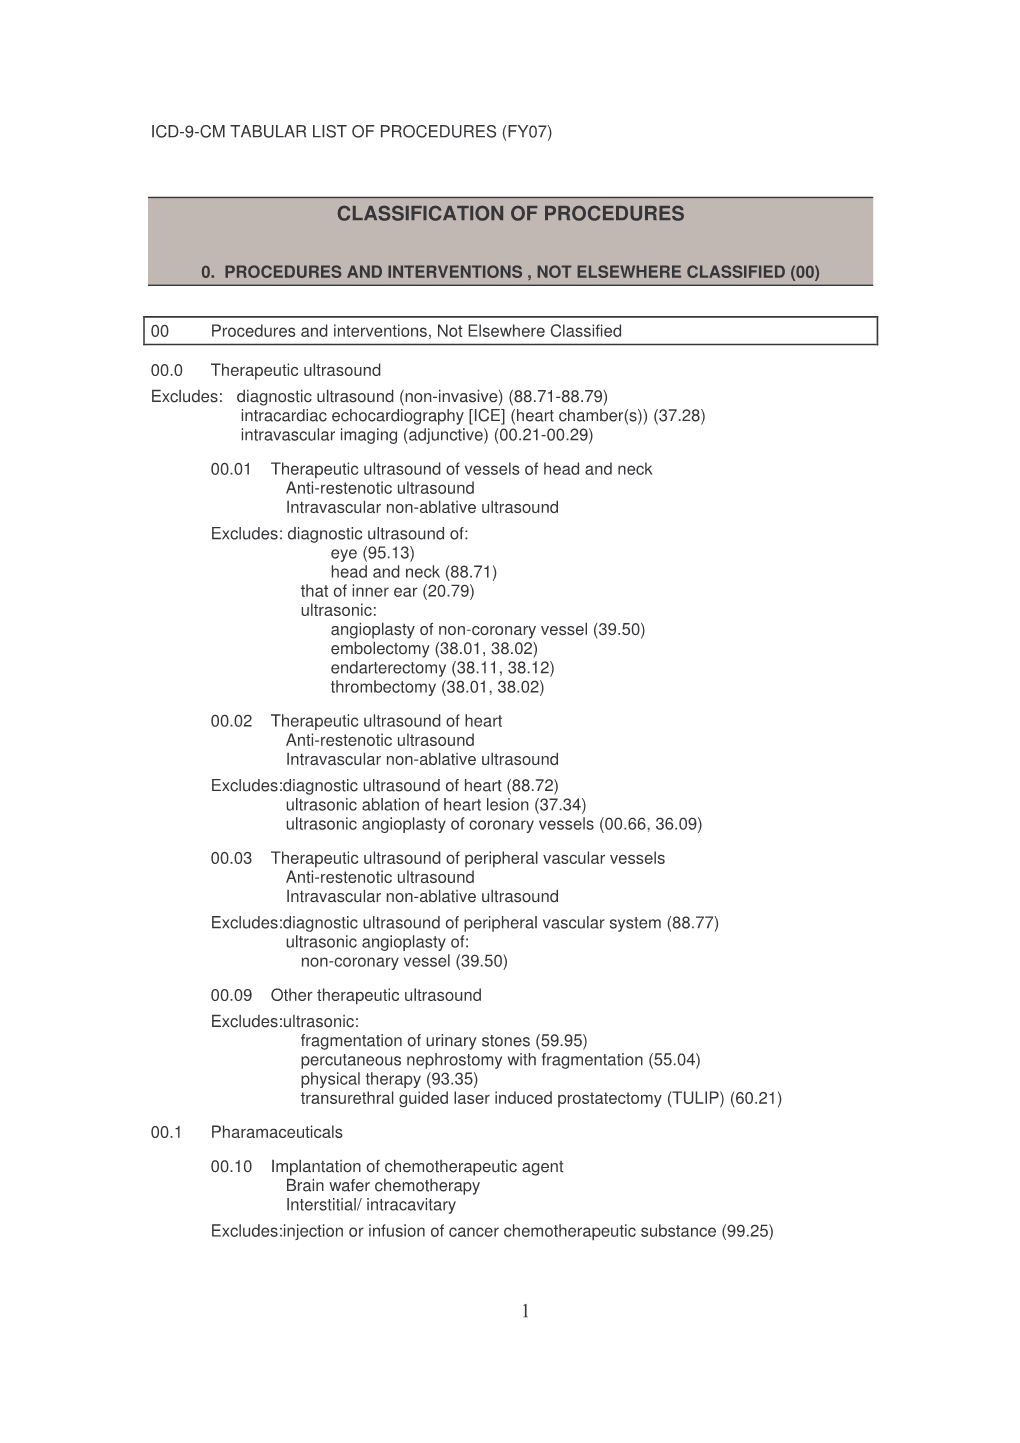 1 Classification of Procedures